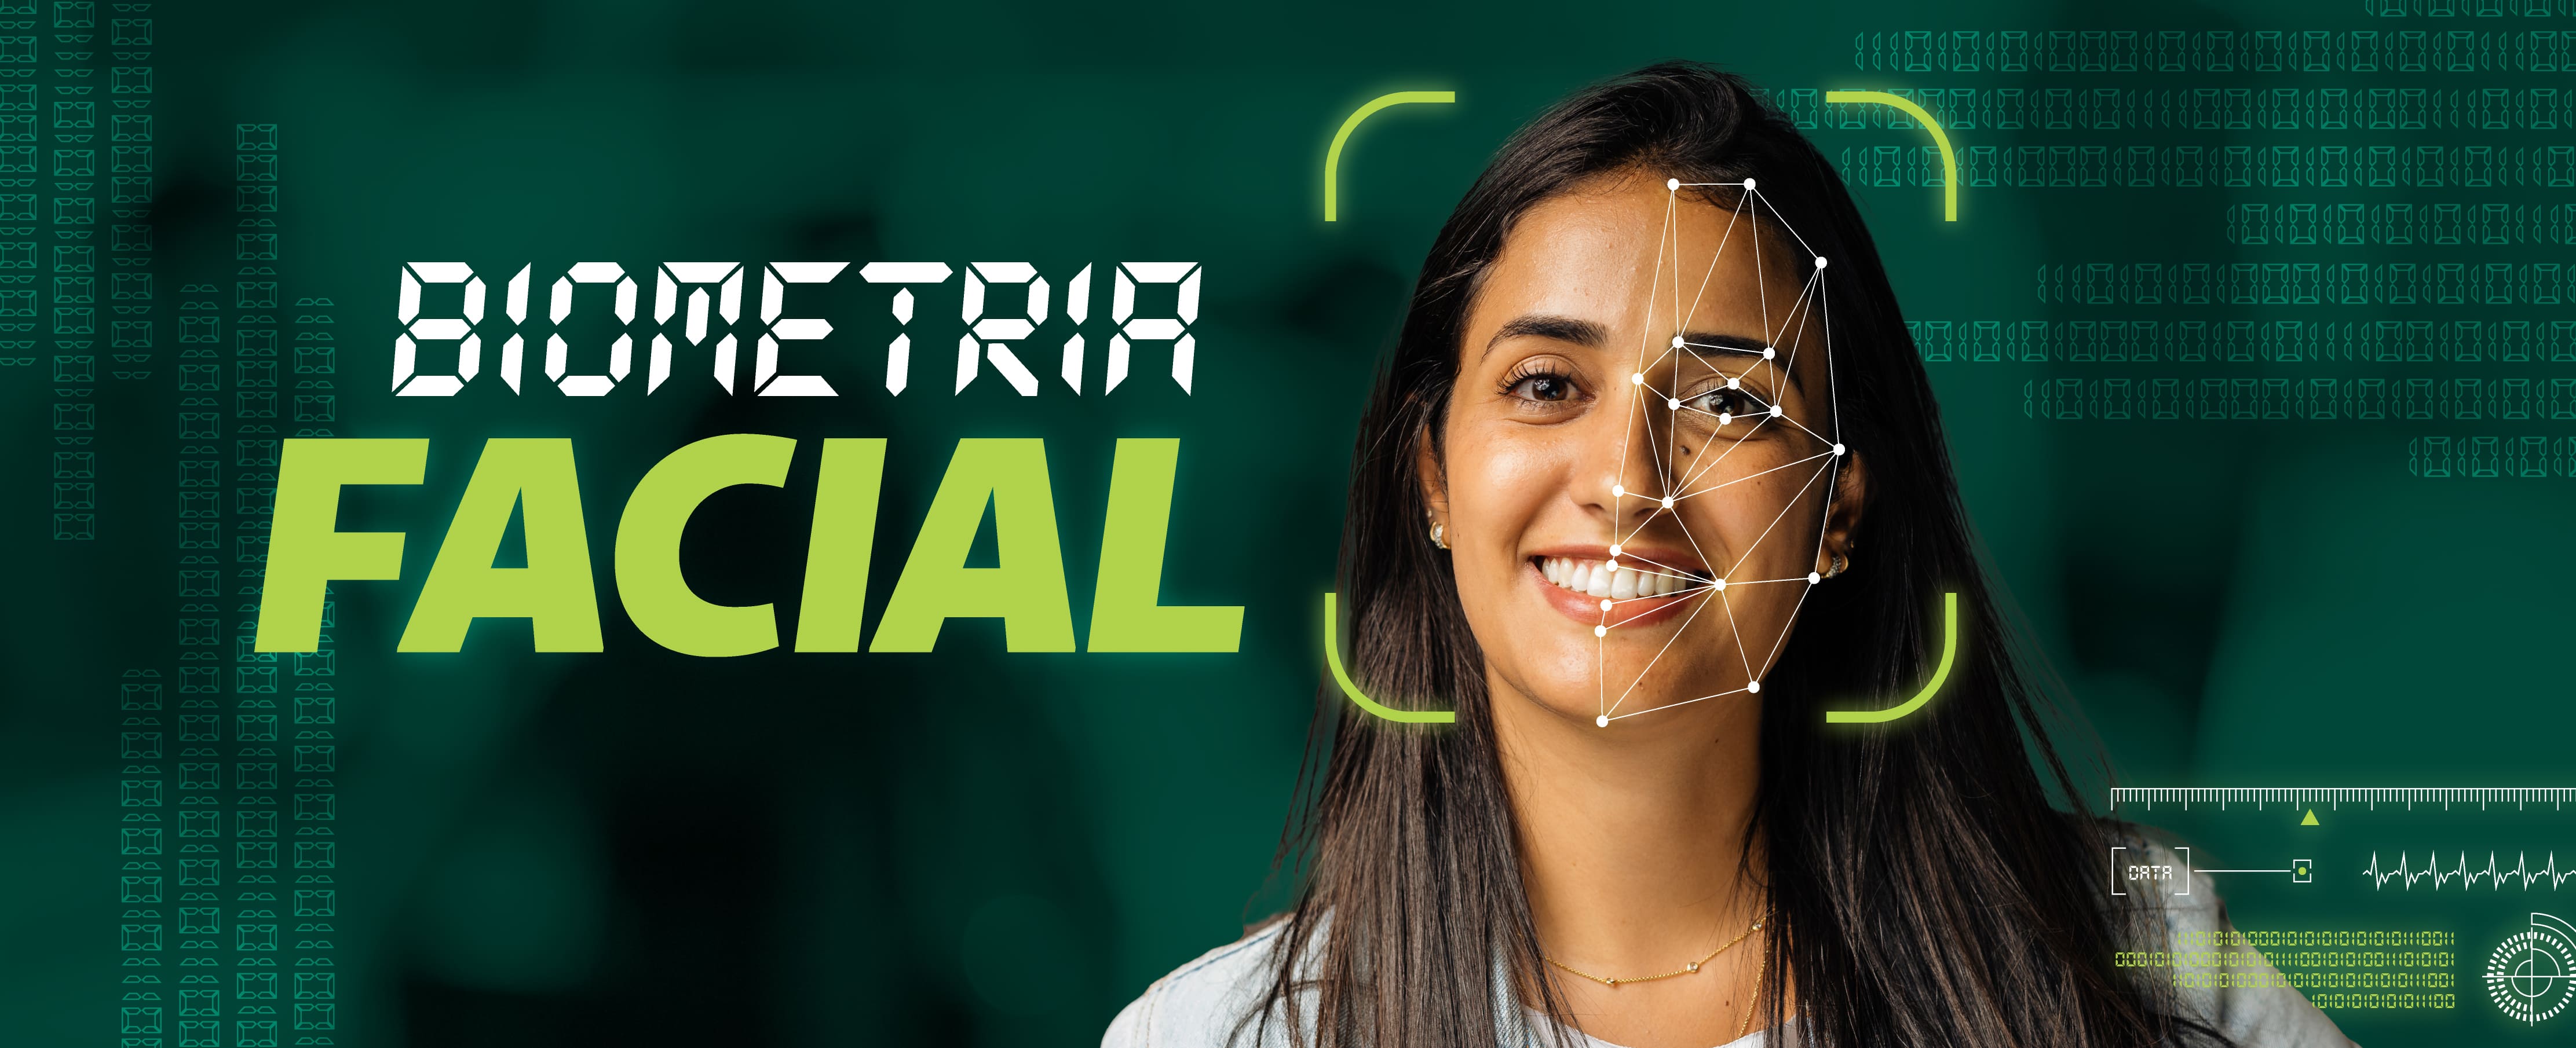 Unimed Rio Preto inova no atendimento e inicia a implantação da biometria facial.